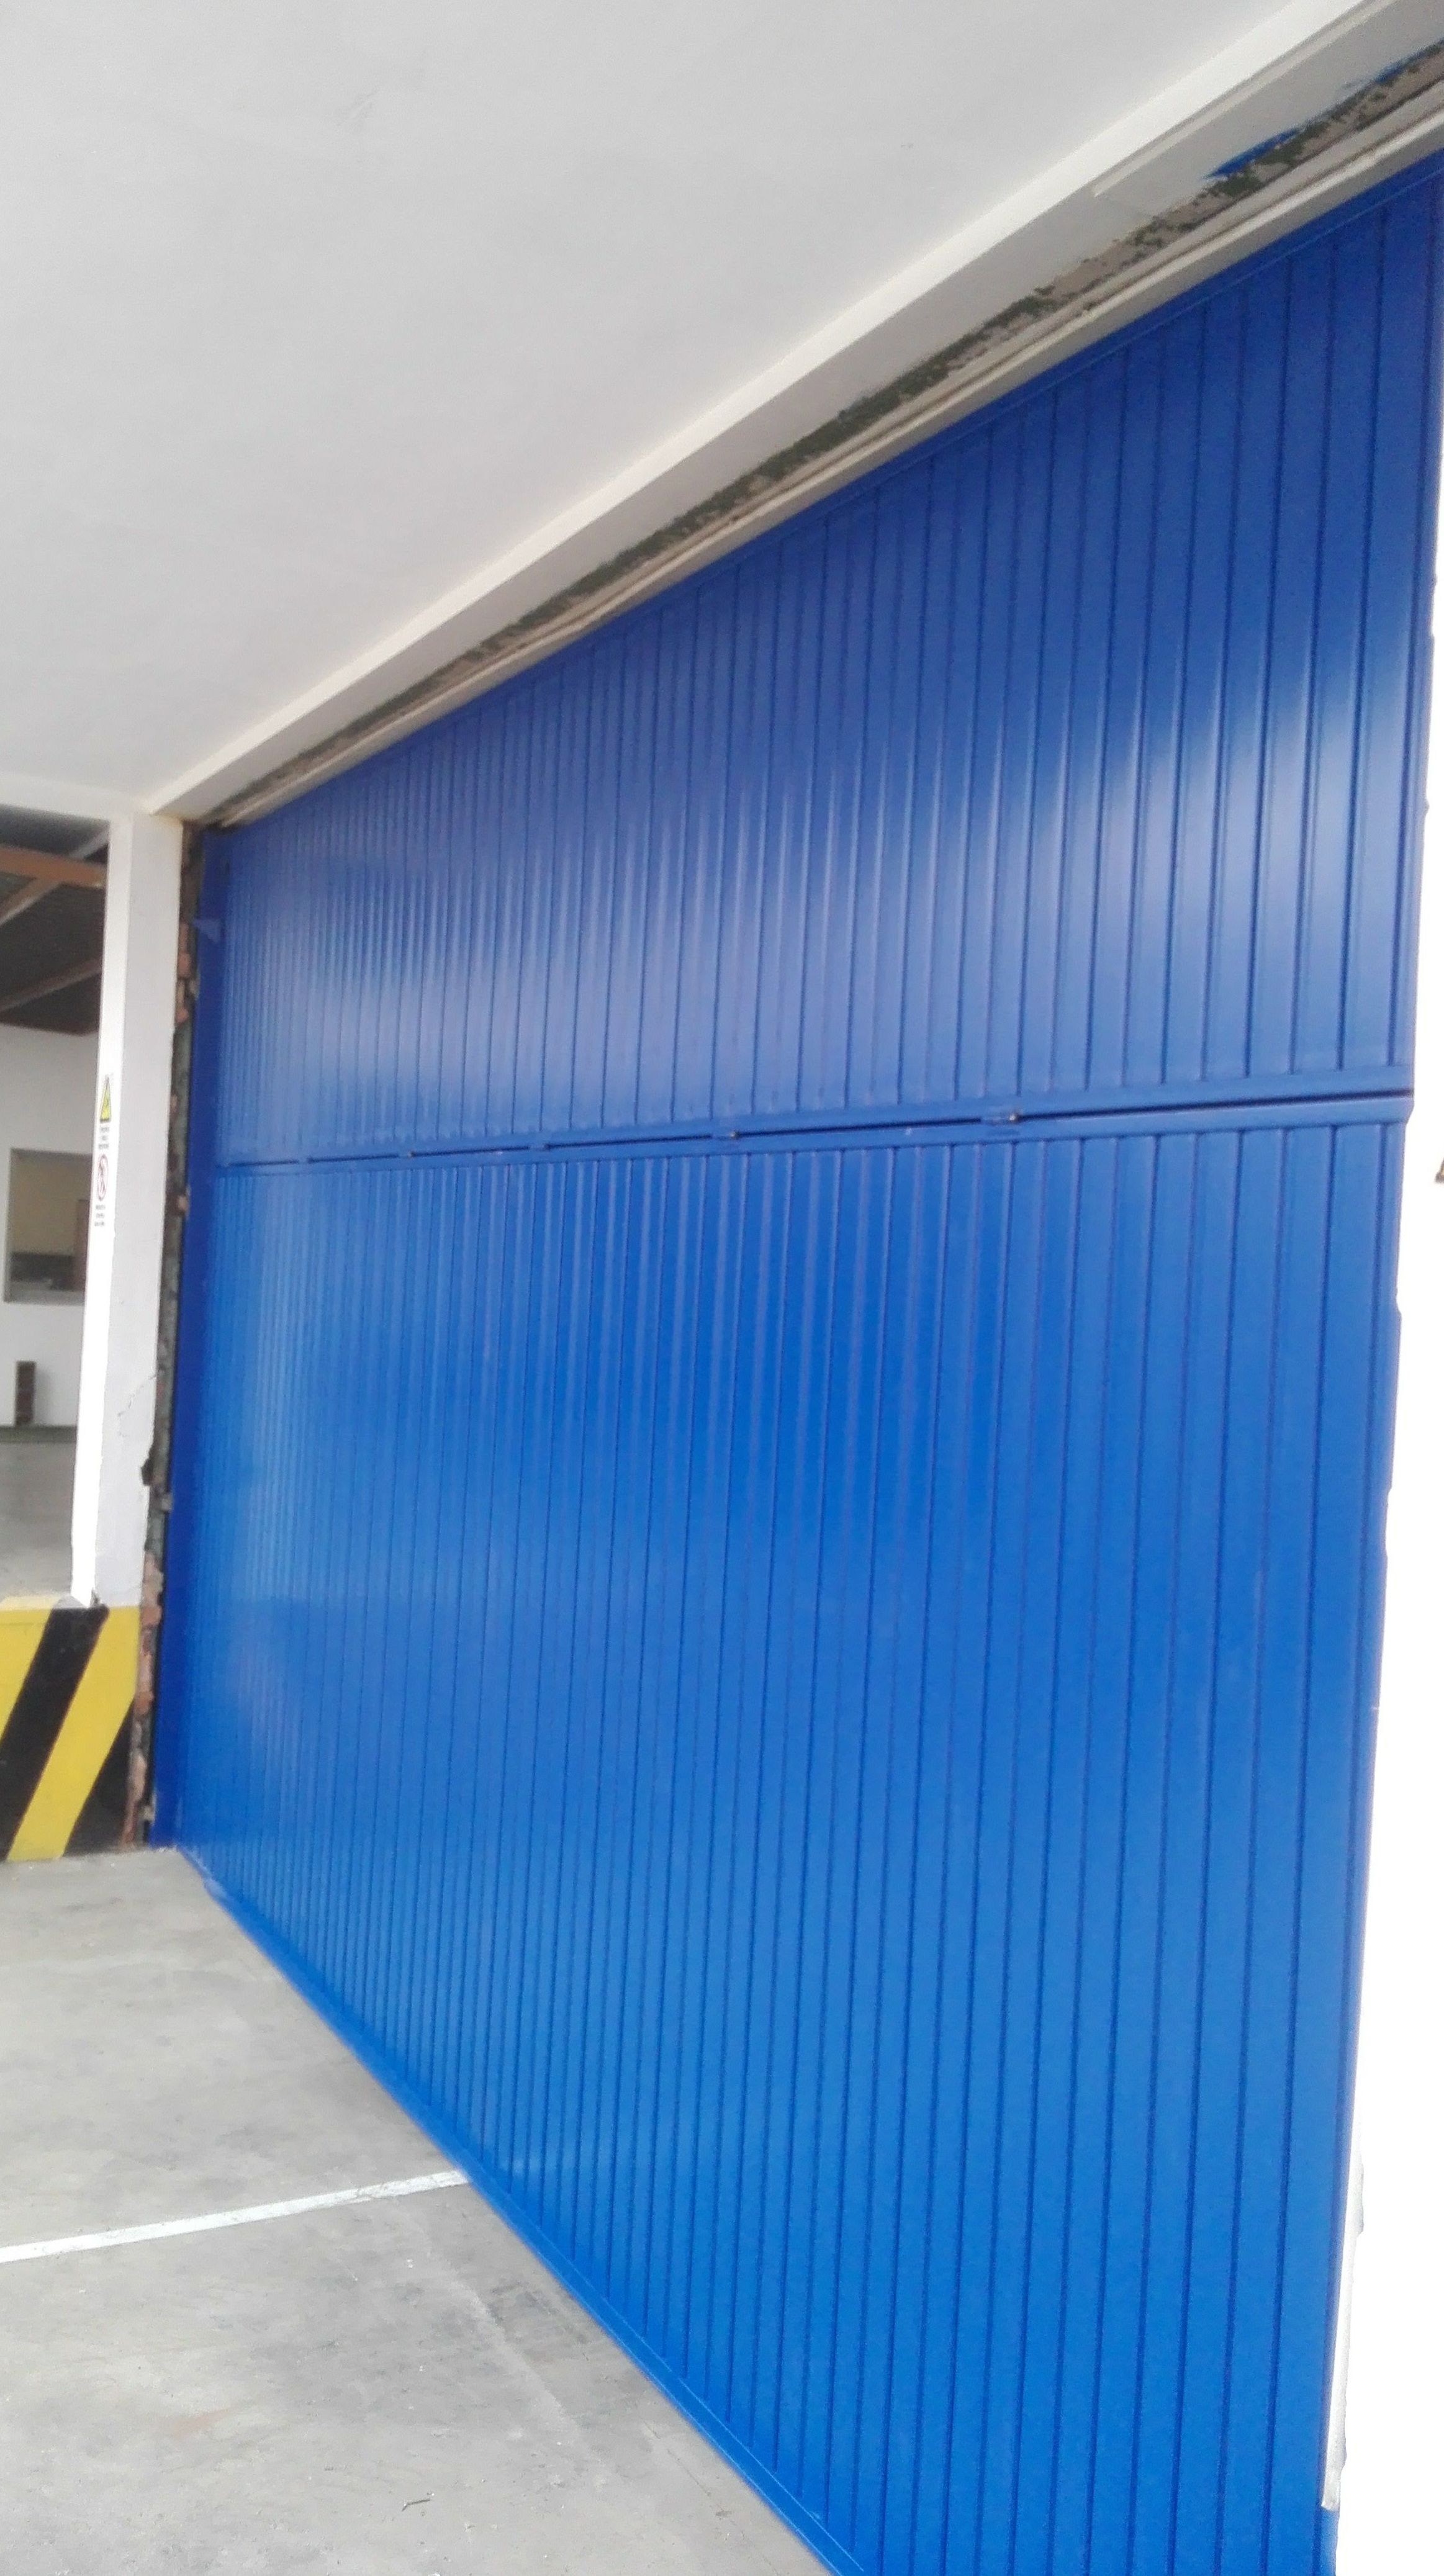 Puerta basculante de contrapesos de chapa metálica en pintura de color azul 5005 en Paterna